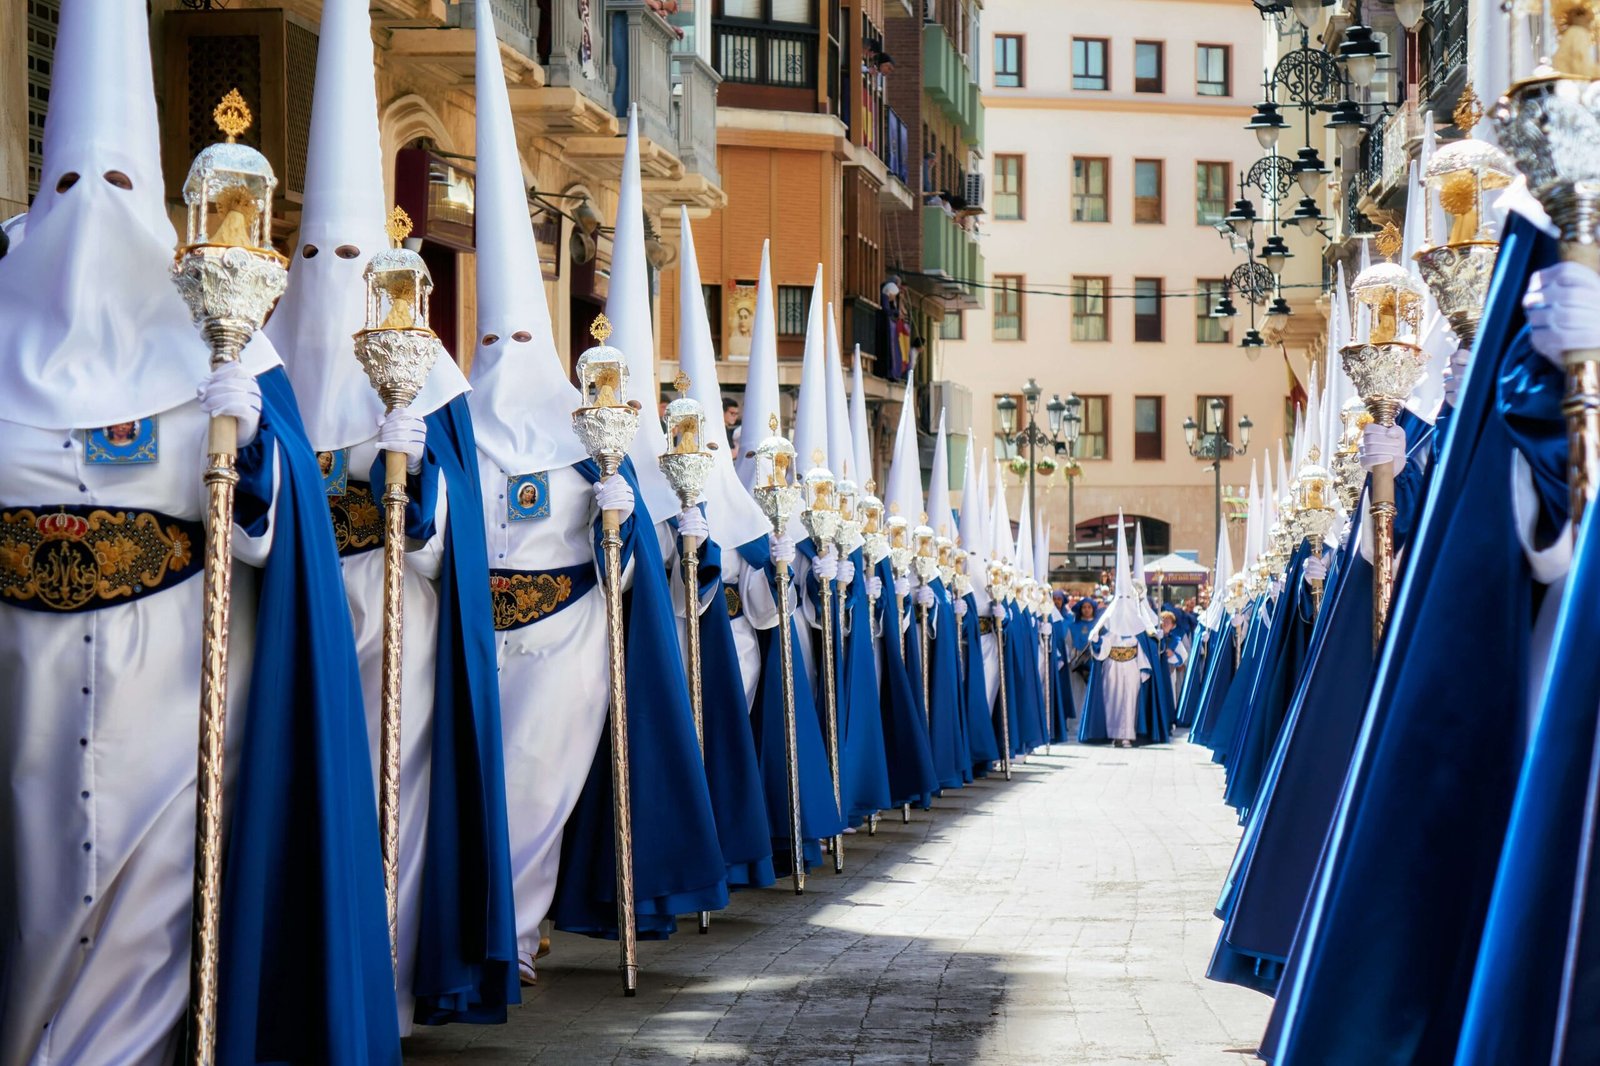 Semana Santa in Sevilla, festivals around the world